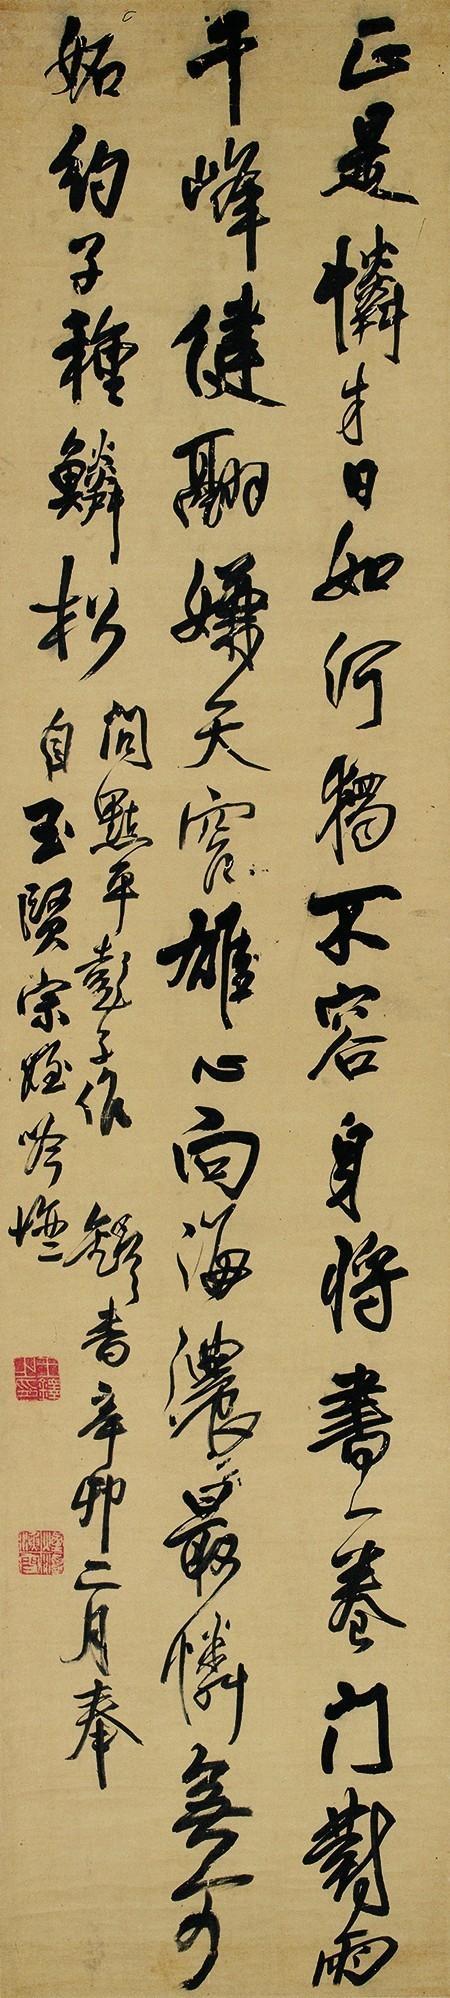 王铎 自作诗《问点平彭子作》（1651年）  西泠印社藏